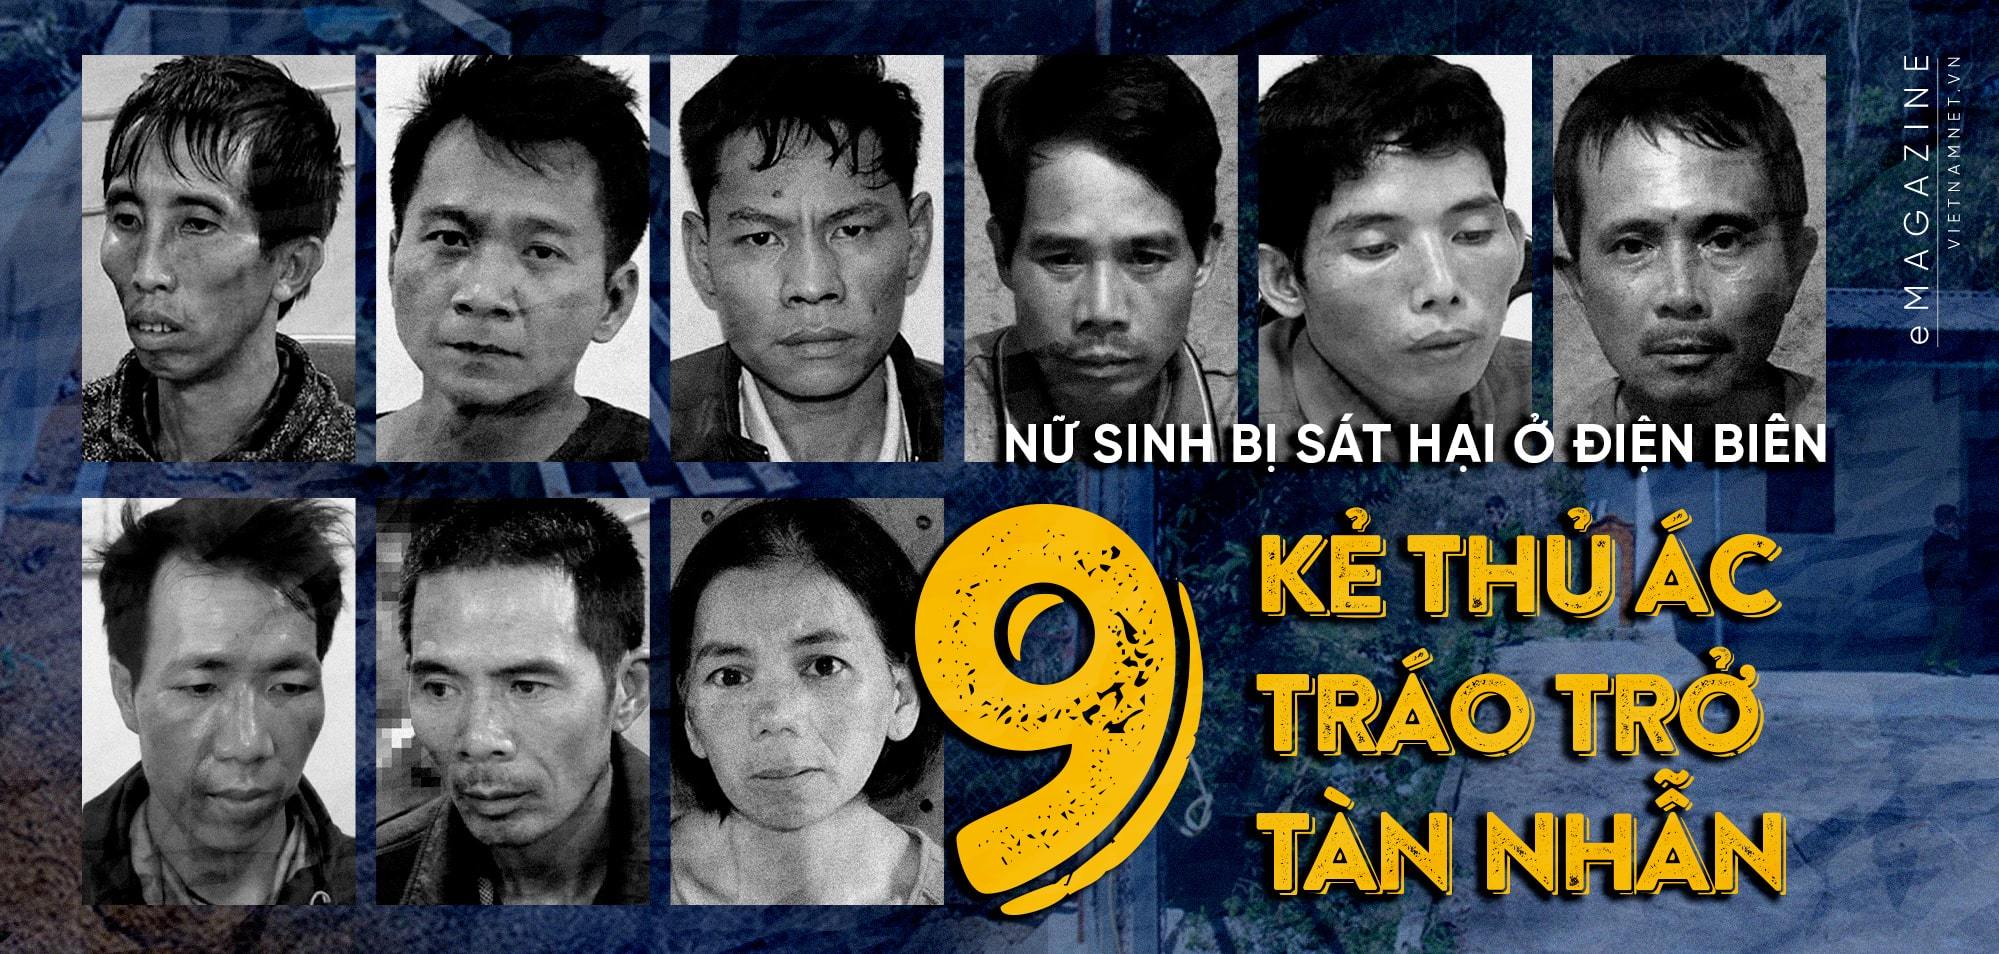 Nữ sinh bị sát hại ở Điện Biên: 9 kẻ thủ ác tráo trở tàn nhẫn